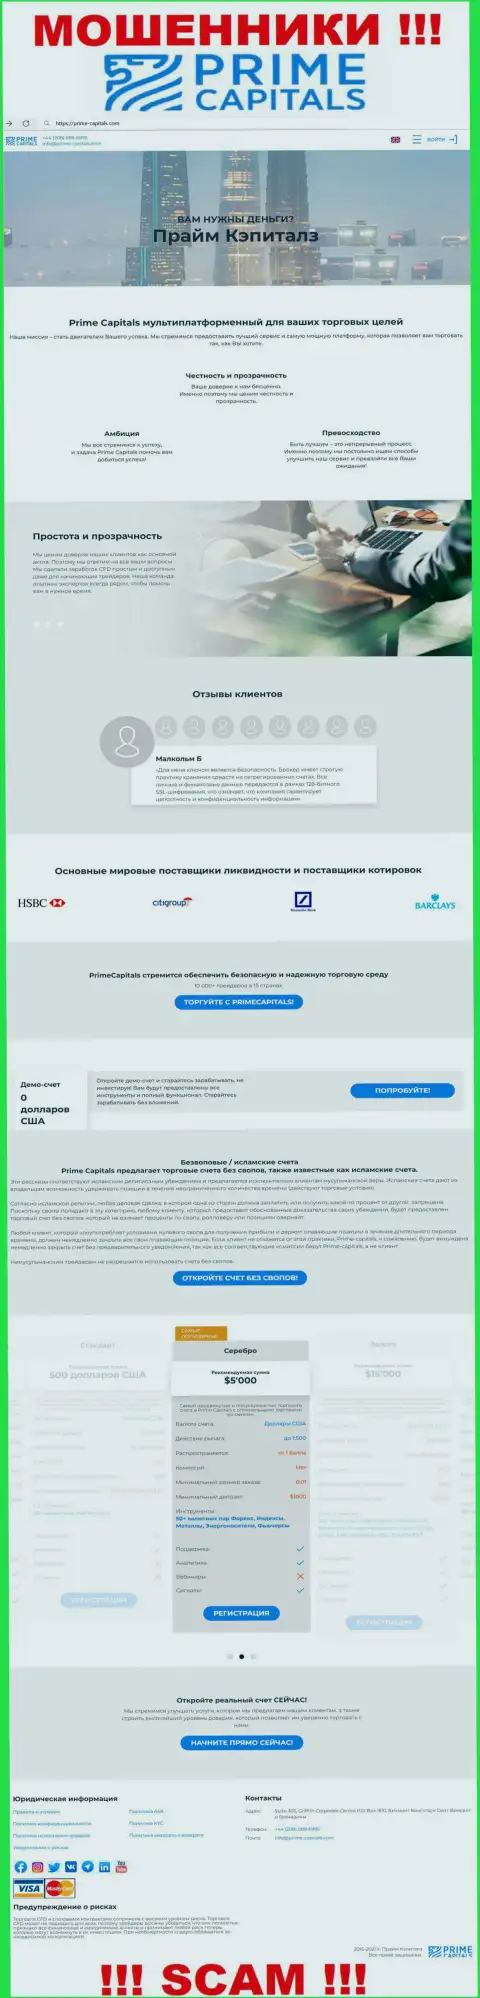 Официальный сайт мошенников ПраймКапиталз